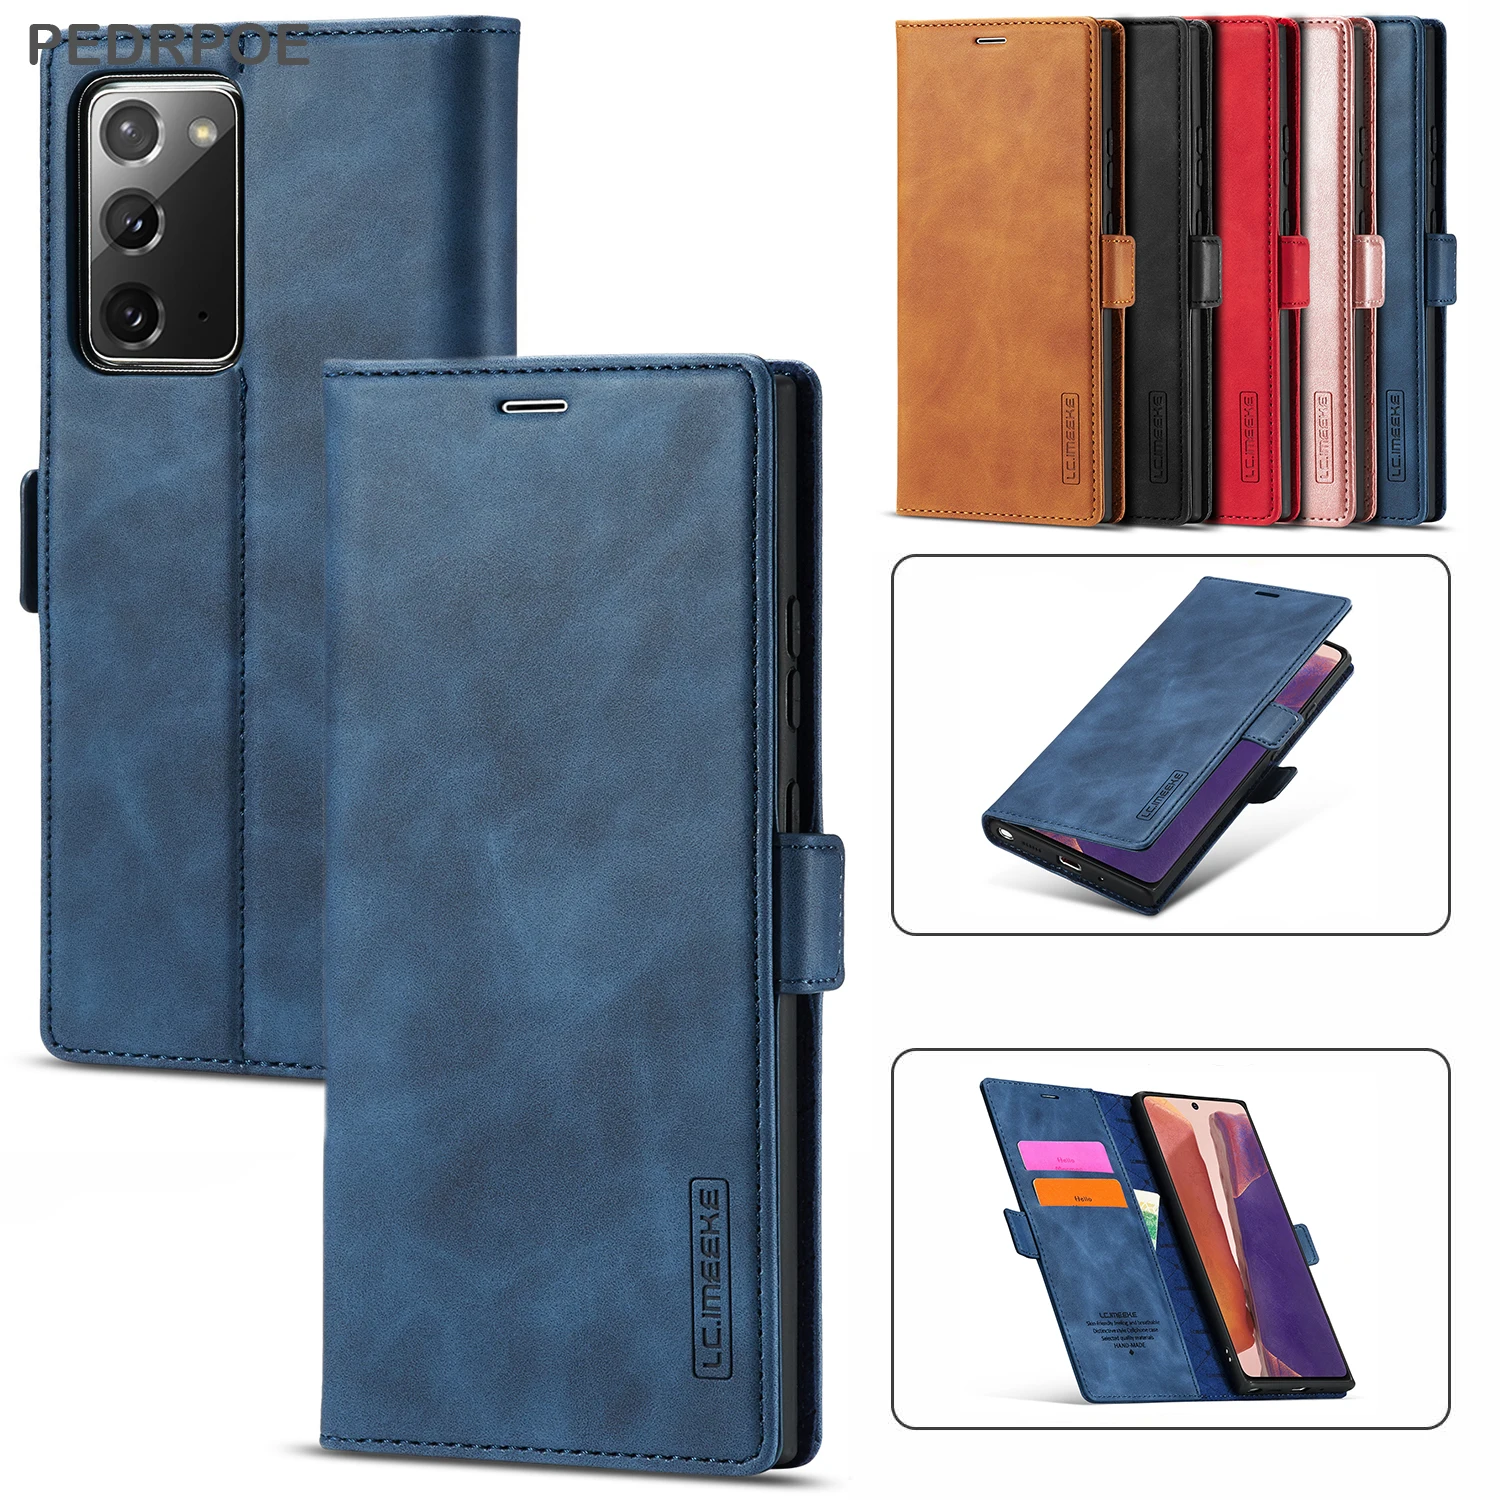 

Матовый кожаный чехол-книжка с бумажником для Samsung Galaxy Note 20 Ultra Note 10 Plus Note 9, роскошный защитный чехол для телефона с отделениями для карт